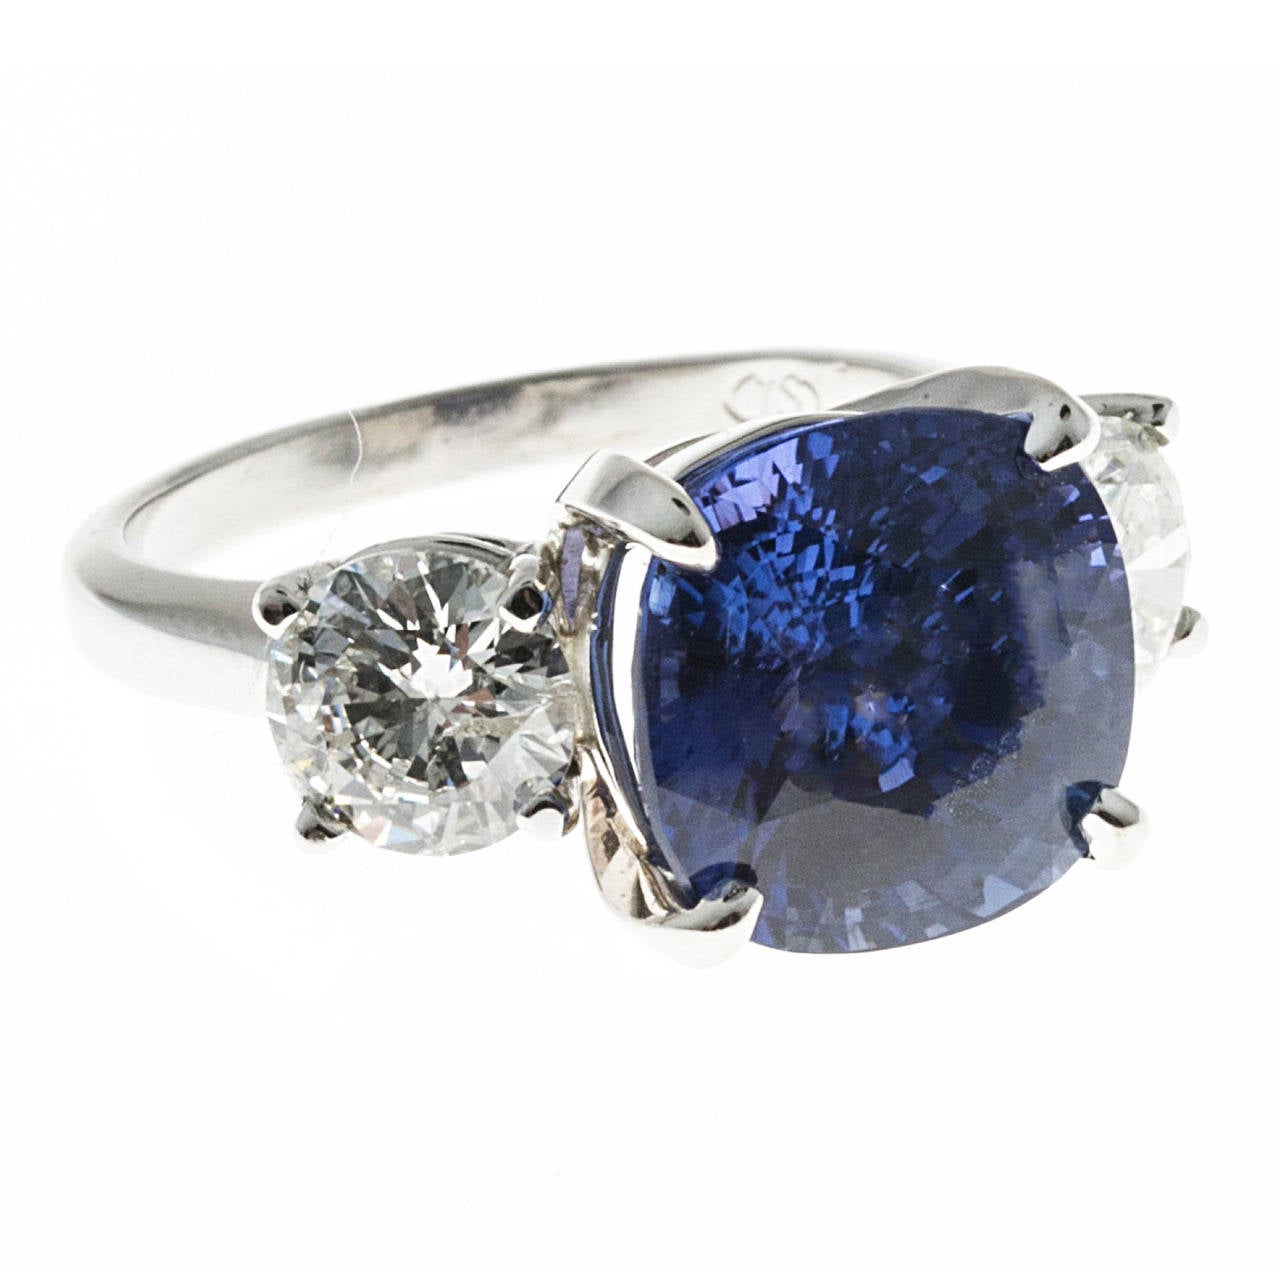 Saphir bleu à taille coussin certifié sans échauffement par Peter Suchy. 7,72ct avec un diamant blanc rond de taille brillant de chaque côté.  Monture en platine massif faite à la main. 

1 Saphir taille coussin, poids total approx. 7,72cts, 10,91 x